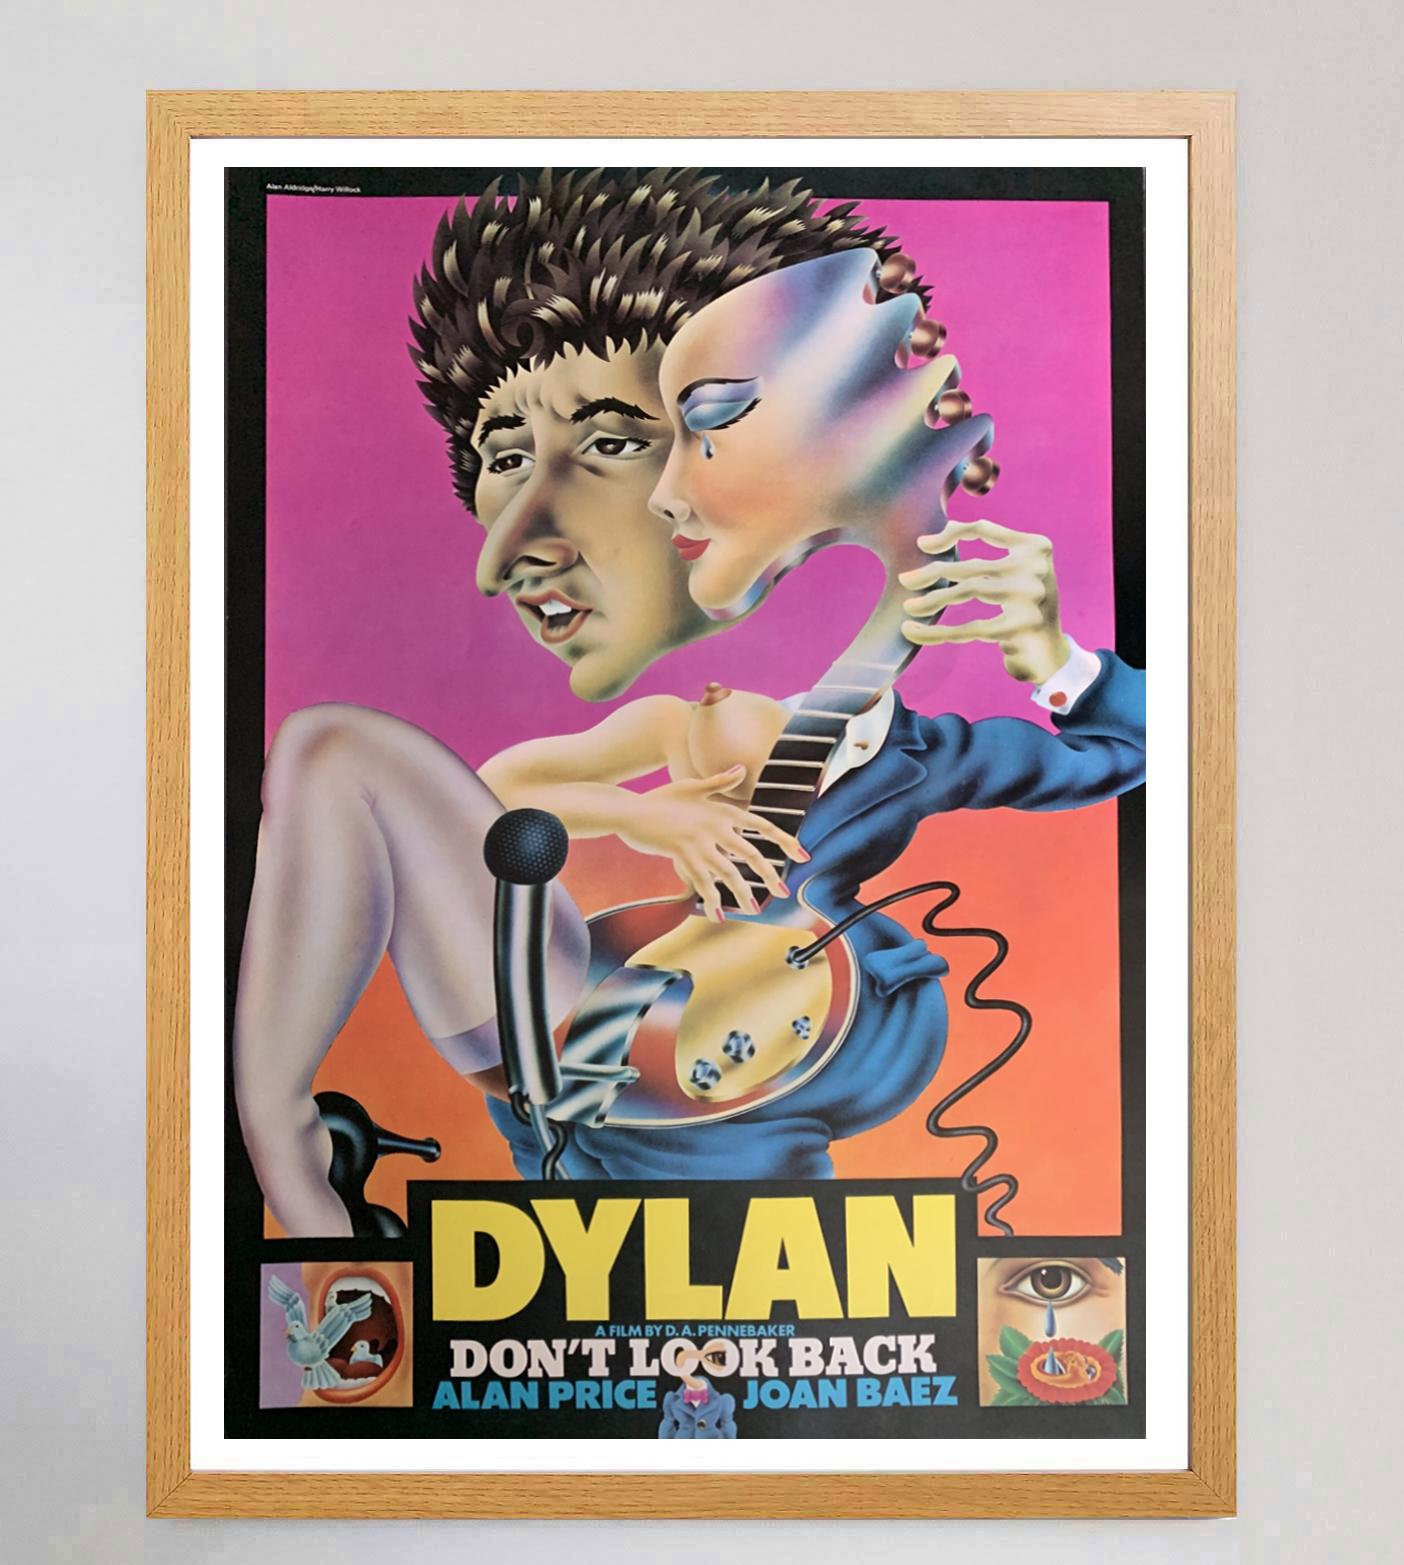 British 1967 Bob Dylan - Don't Look Back Original Vintage Poster For Sale